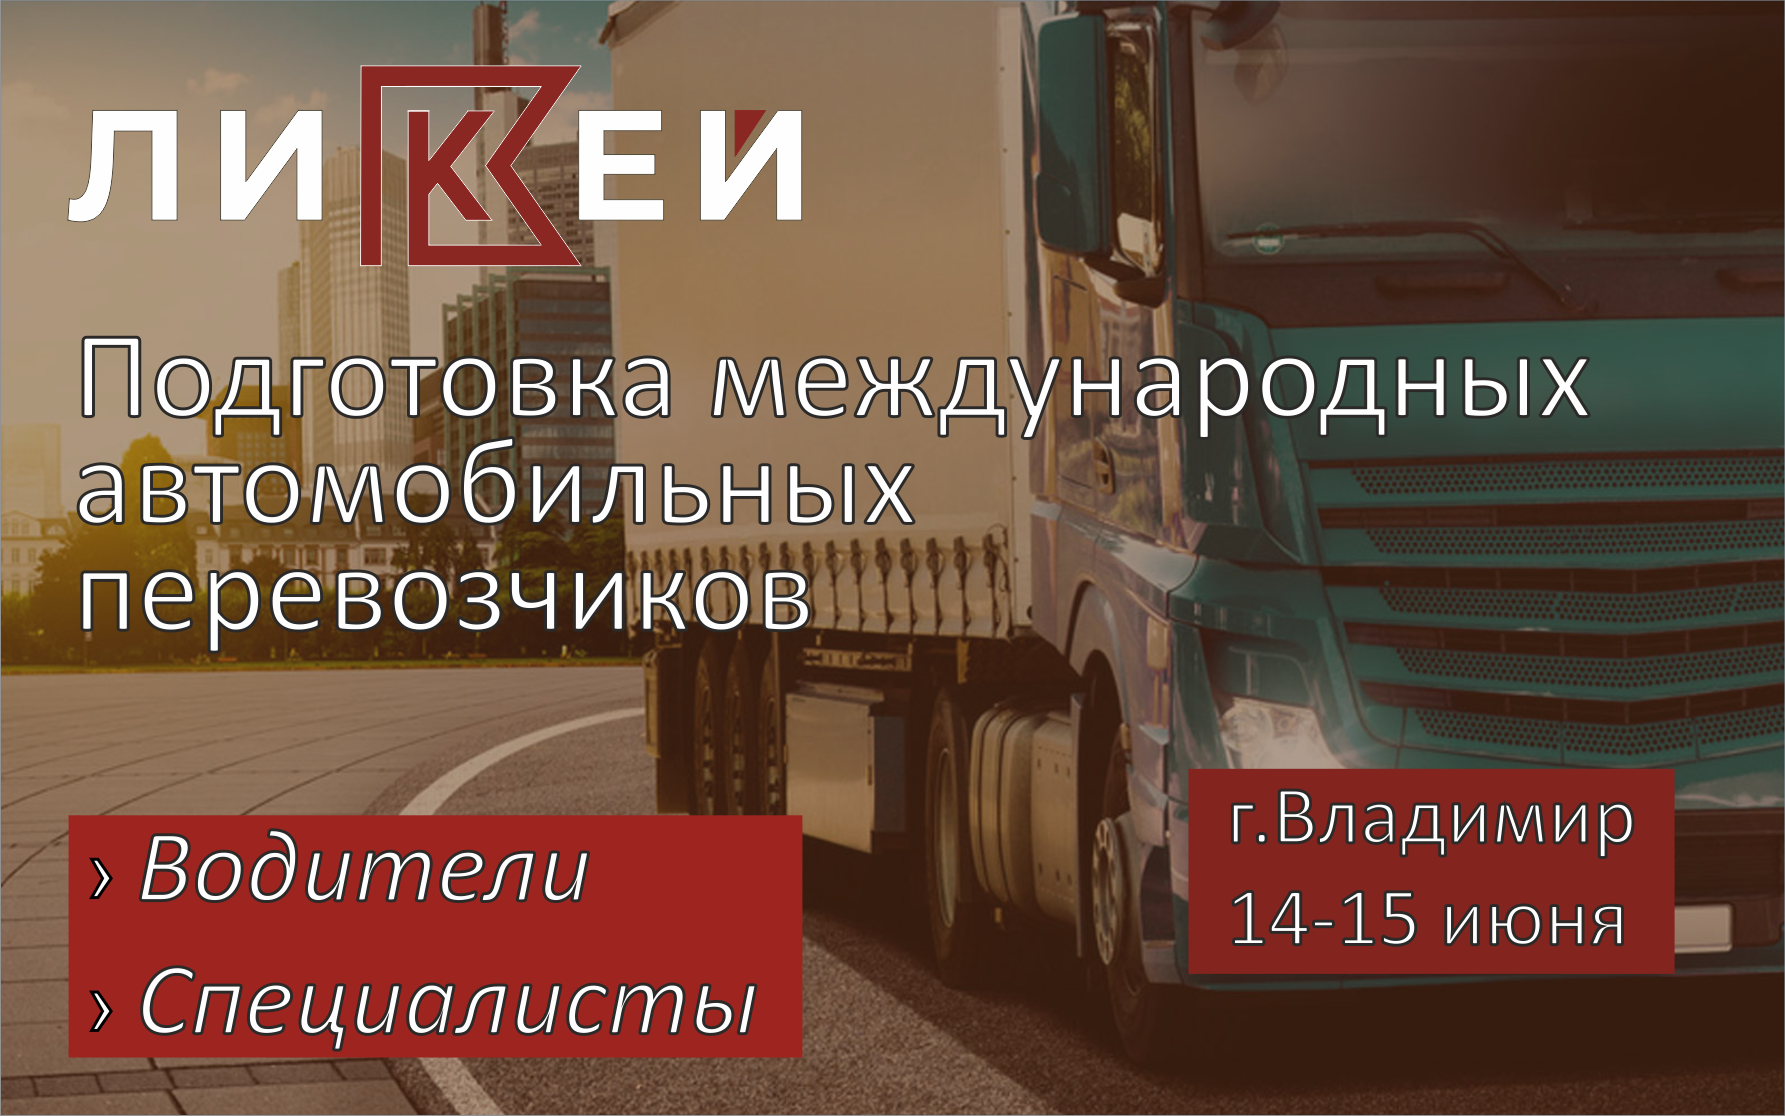 Обучение водителей и специалистов в области международных перевозок во Владимире